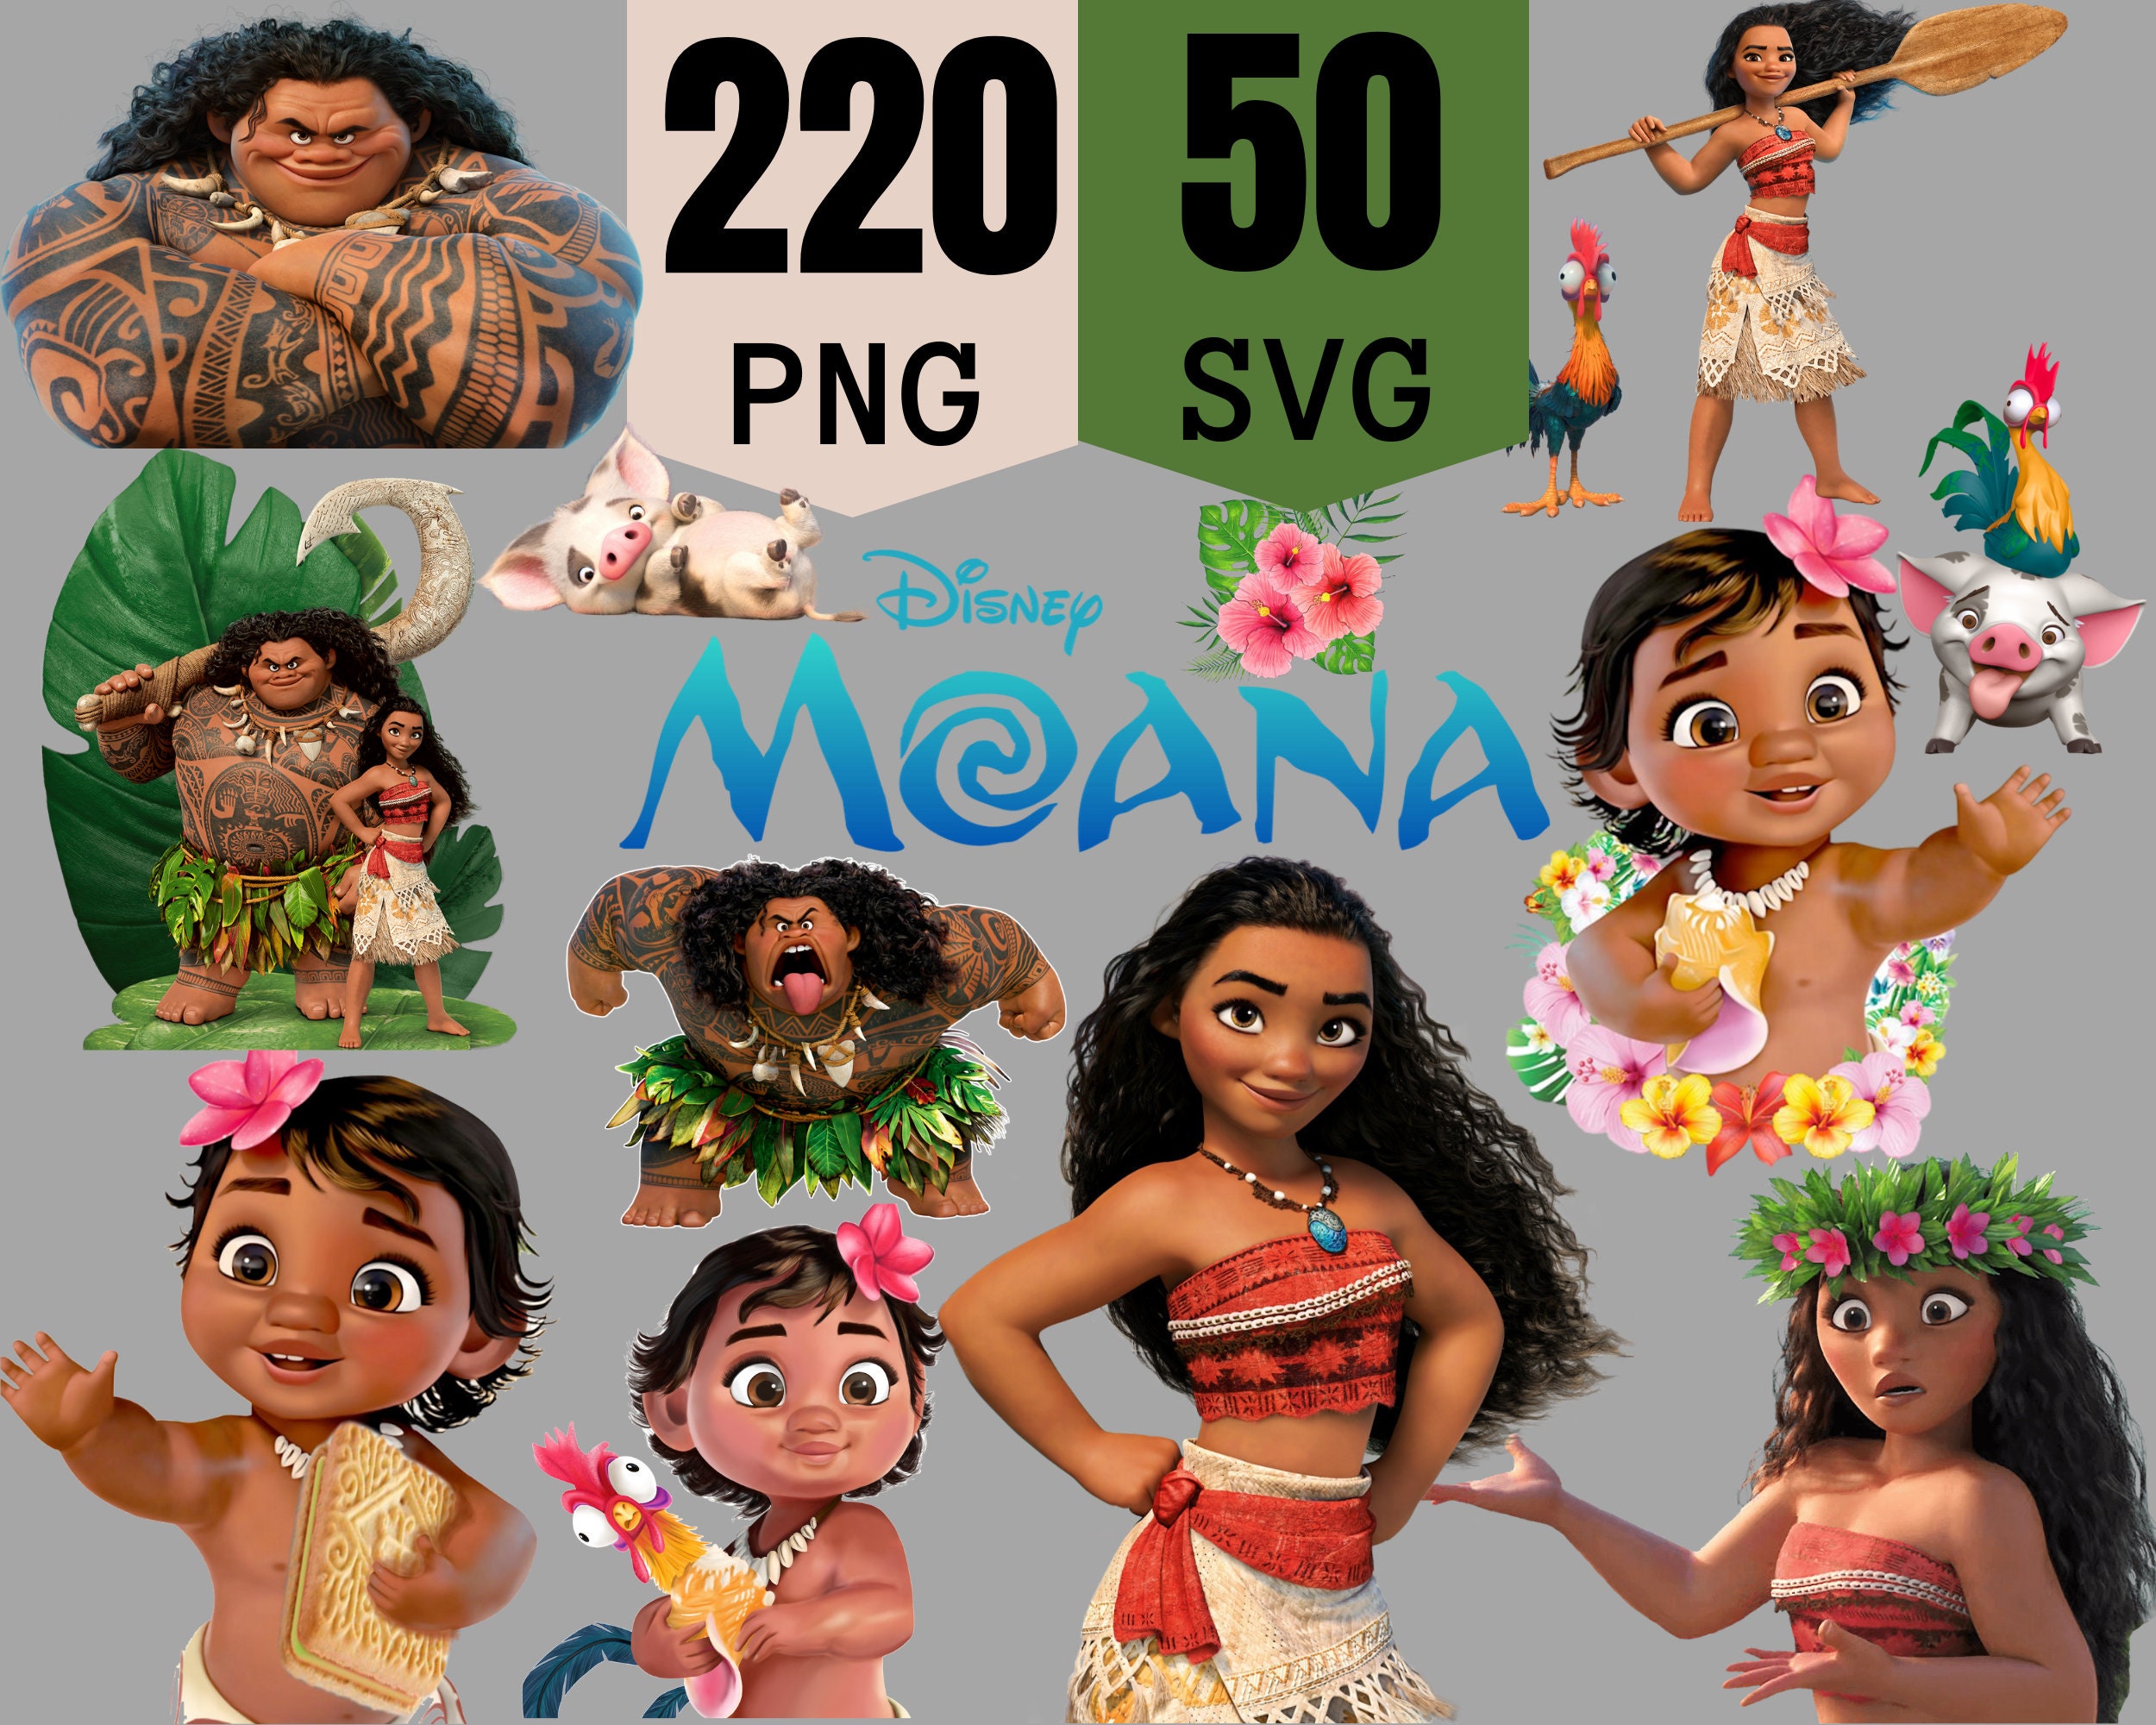 Maui Disney Infant Moana Costume Hawaiian Cosplay Maui Adult Maui